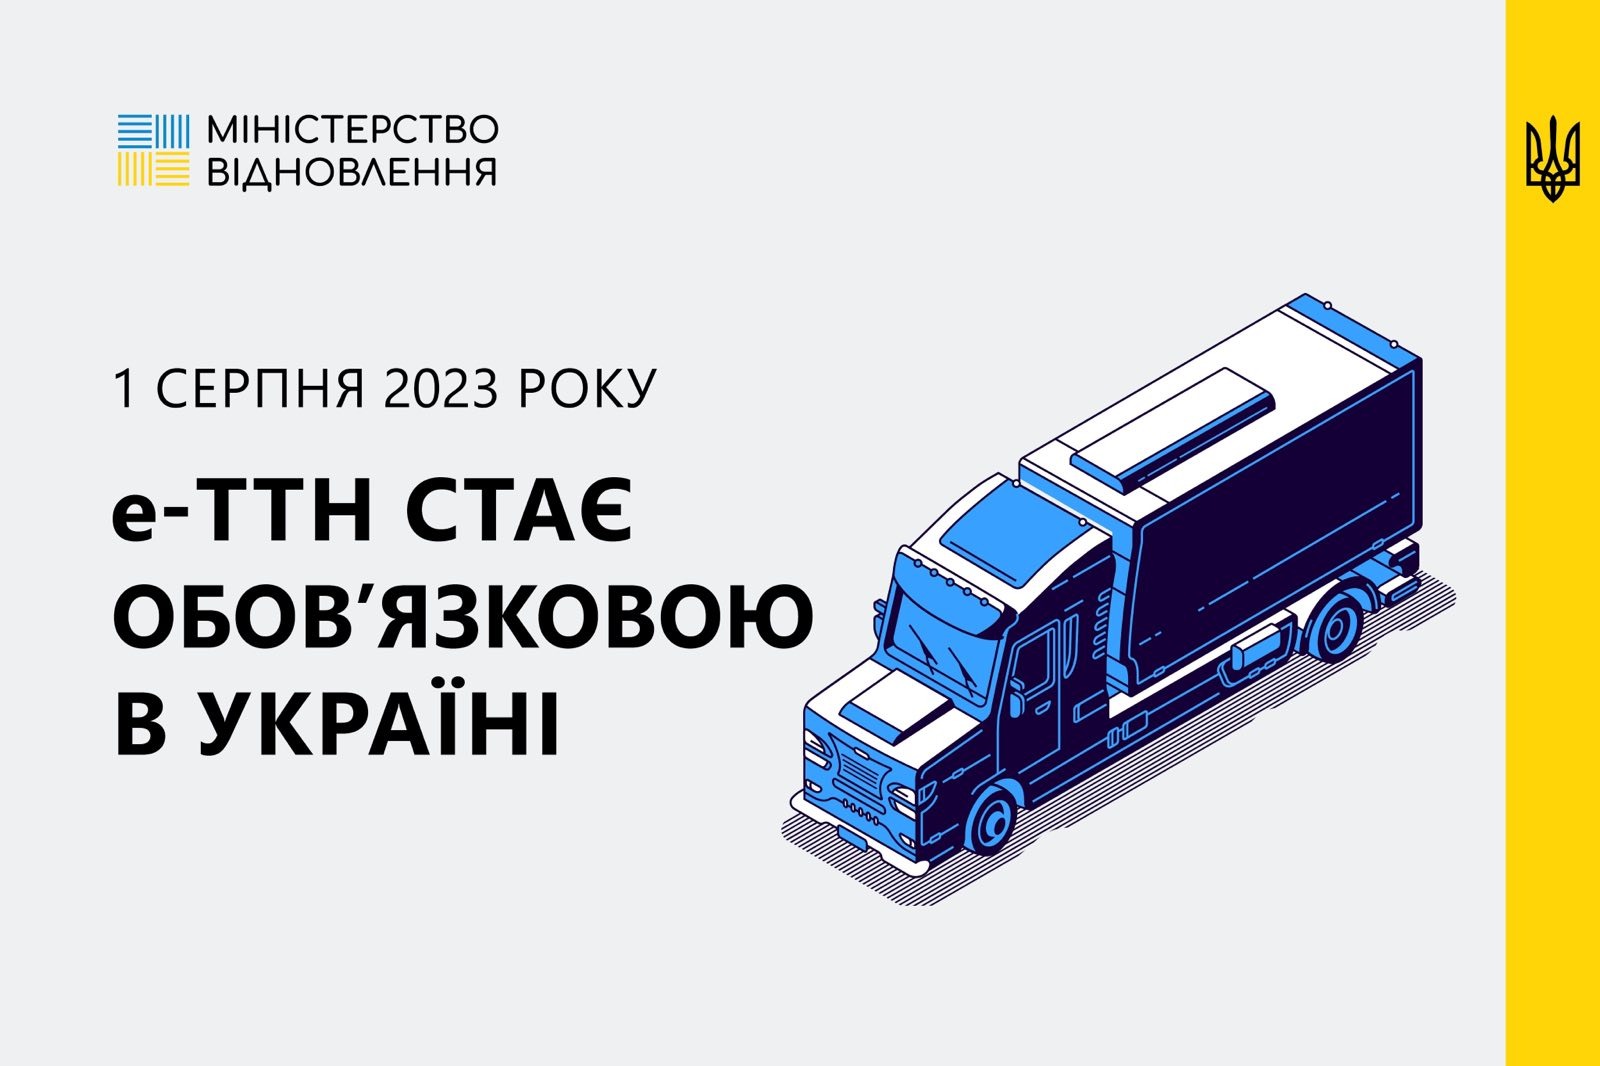 Електронна товарно-транспортна накладна (е-ТТН) стане обовʼязковою з 1 серпня 2023 року